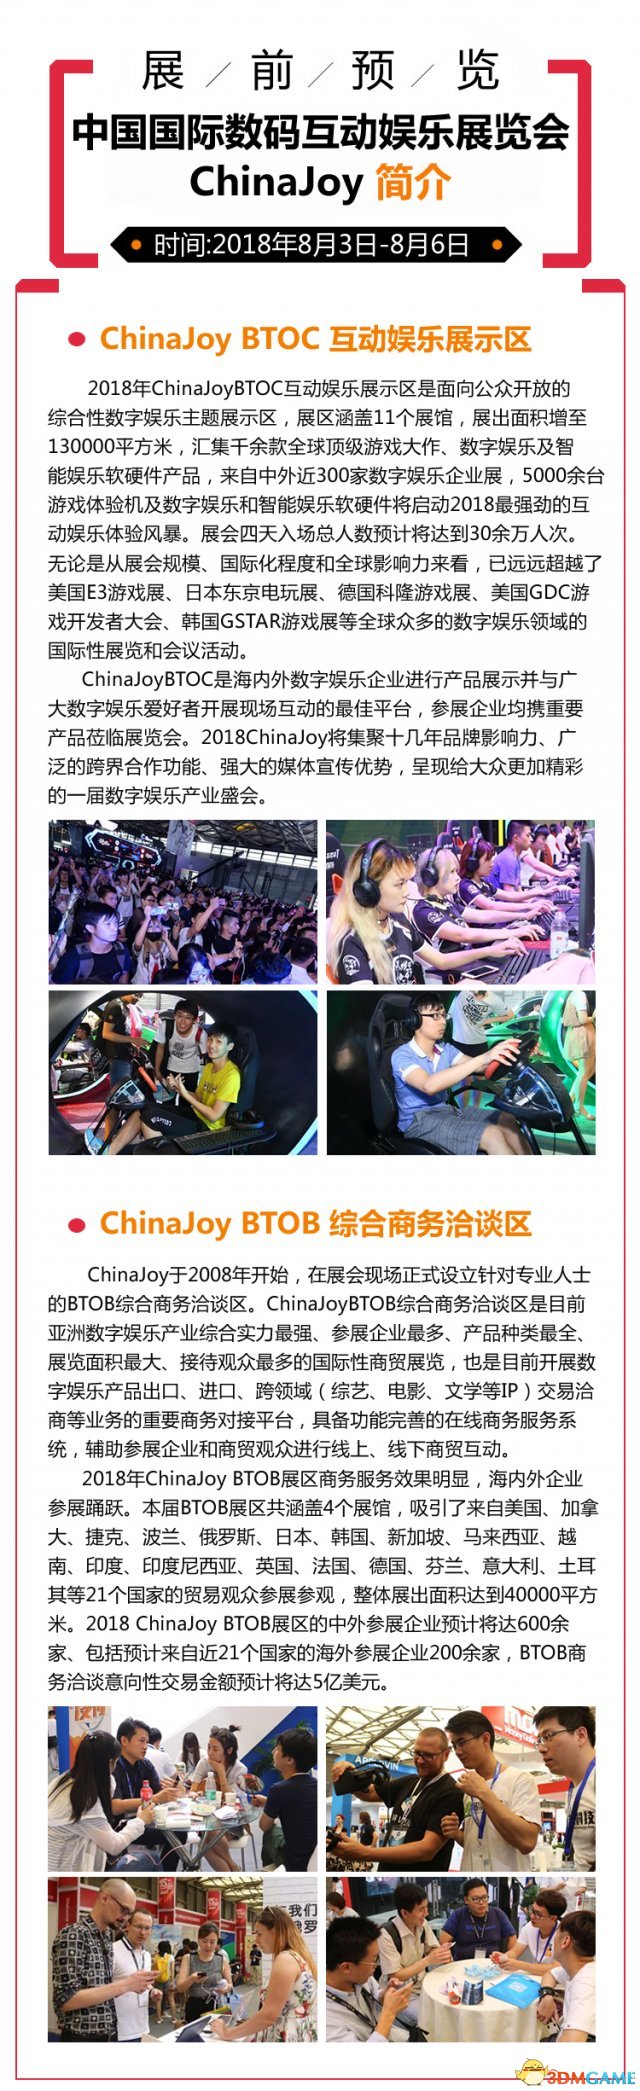 第106届ChinaJoy展前预览(综开疑息篇)正式支布!